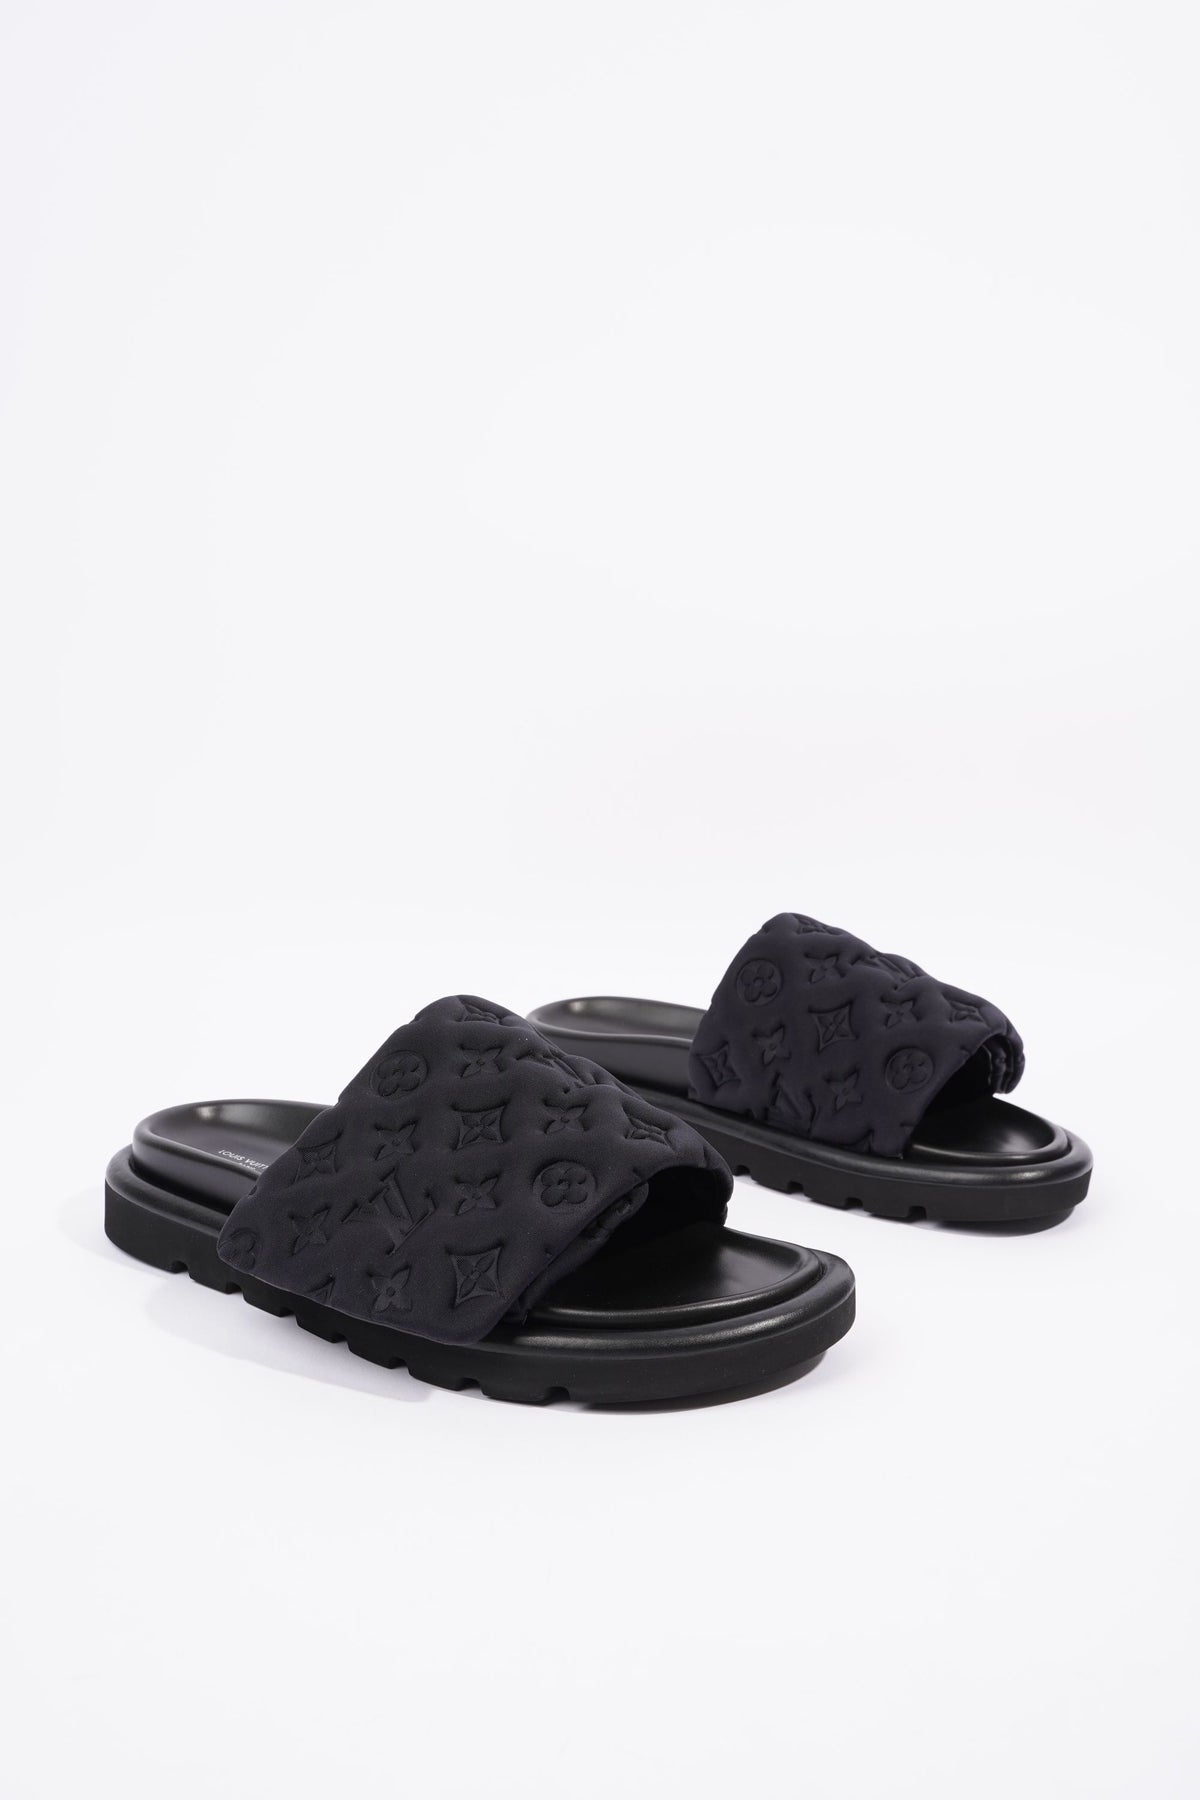 Louis Vuitton Slide Sandals -  UK